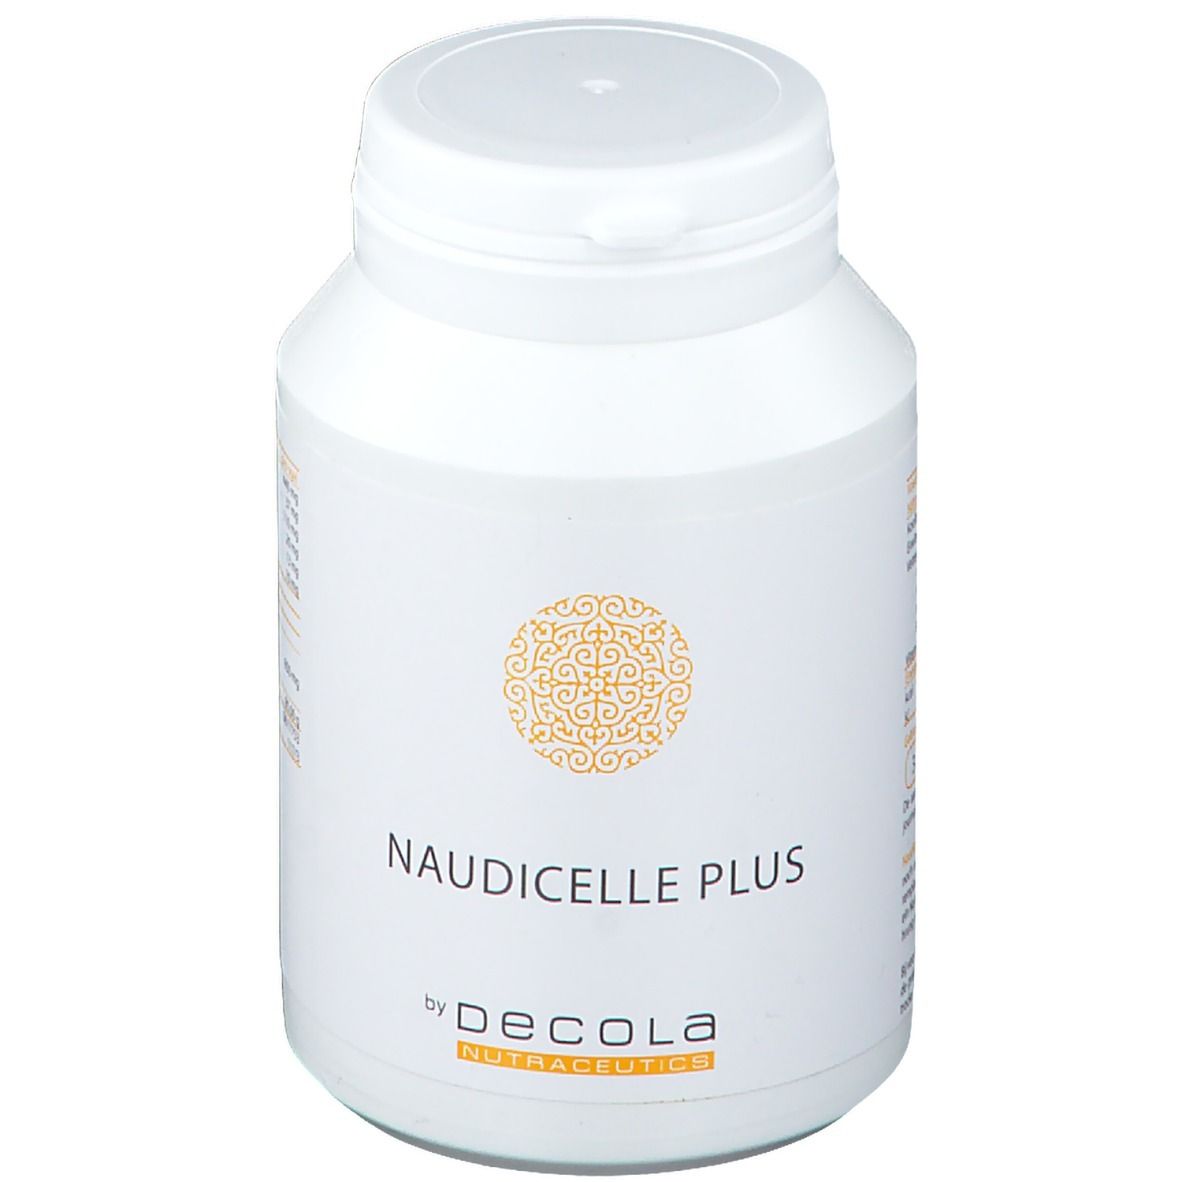 Decola Nutraceutics Naudicelle Plus